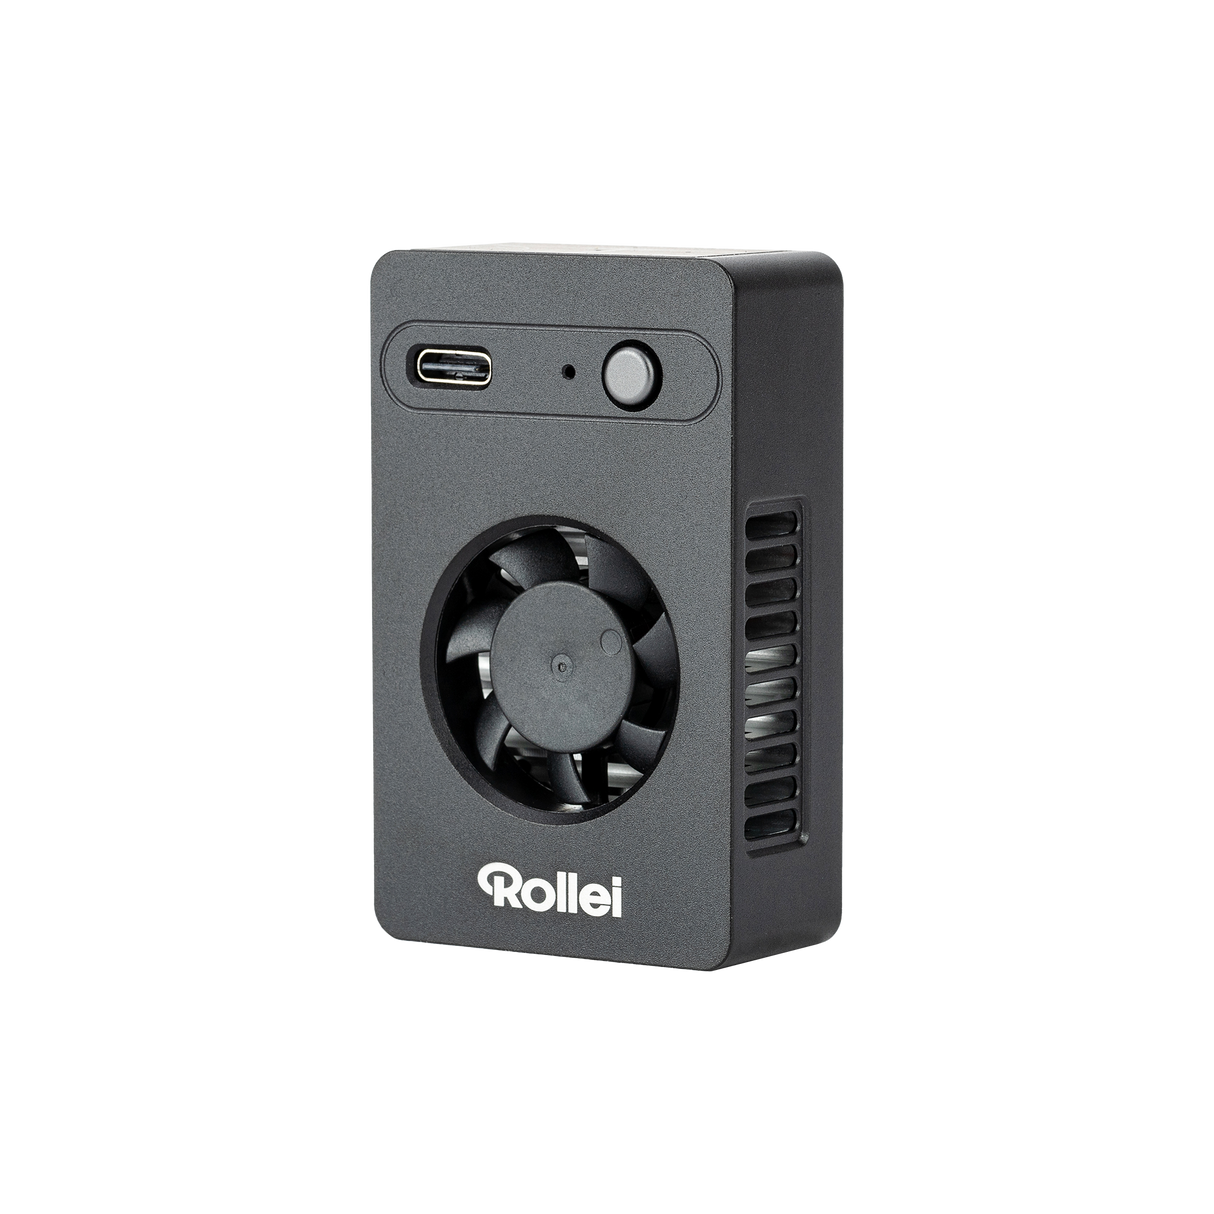 Camera Cooler CC-02